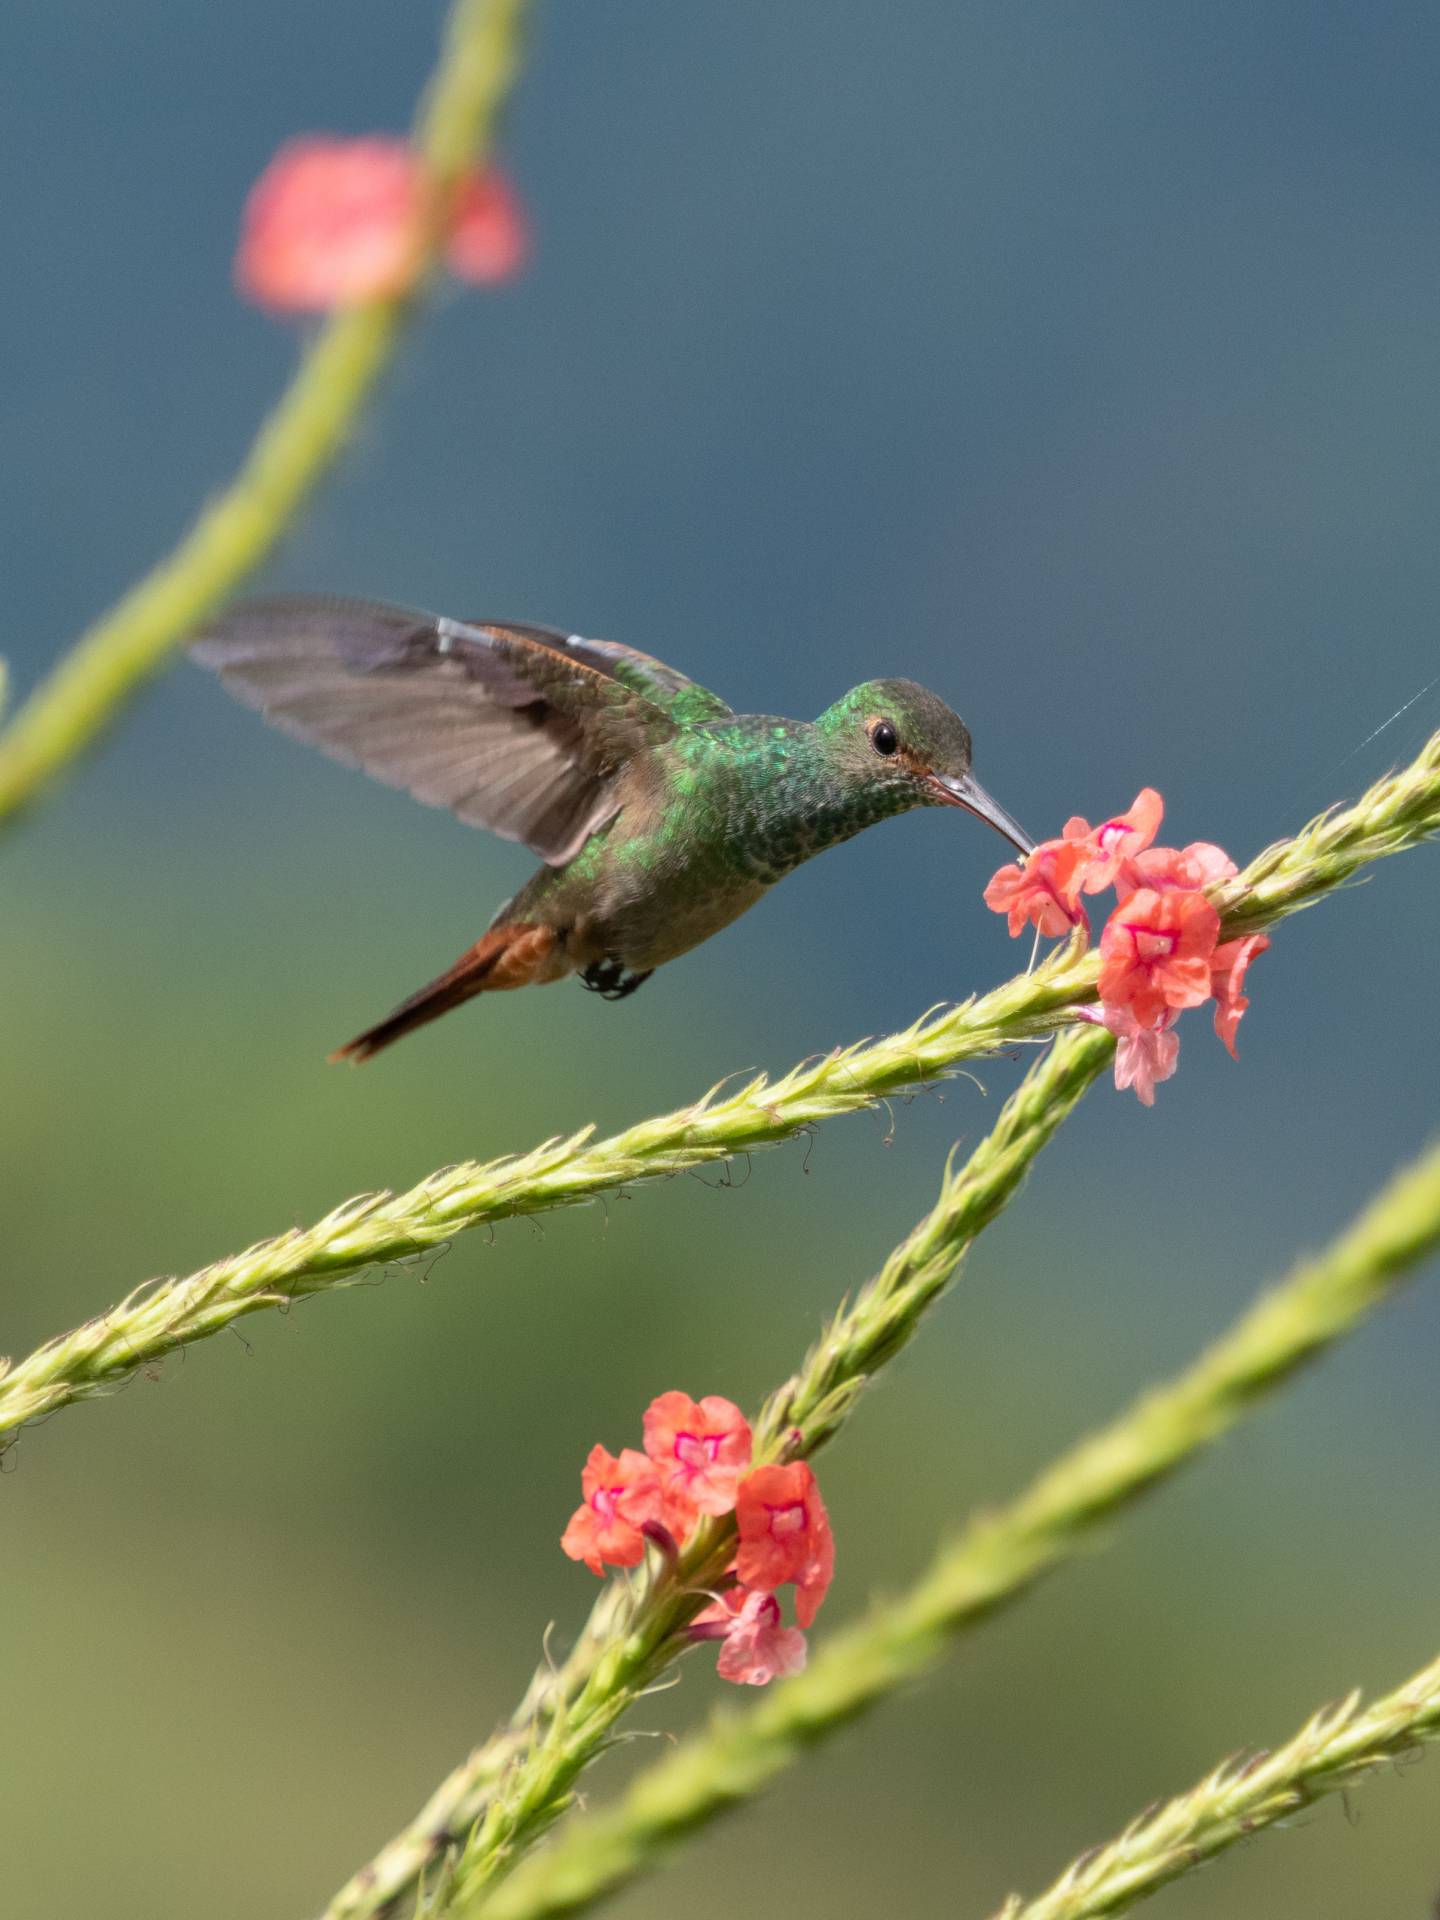 Kolibri in Costa Rica, 17 november 2019